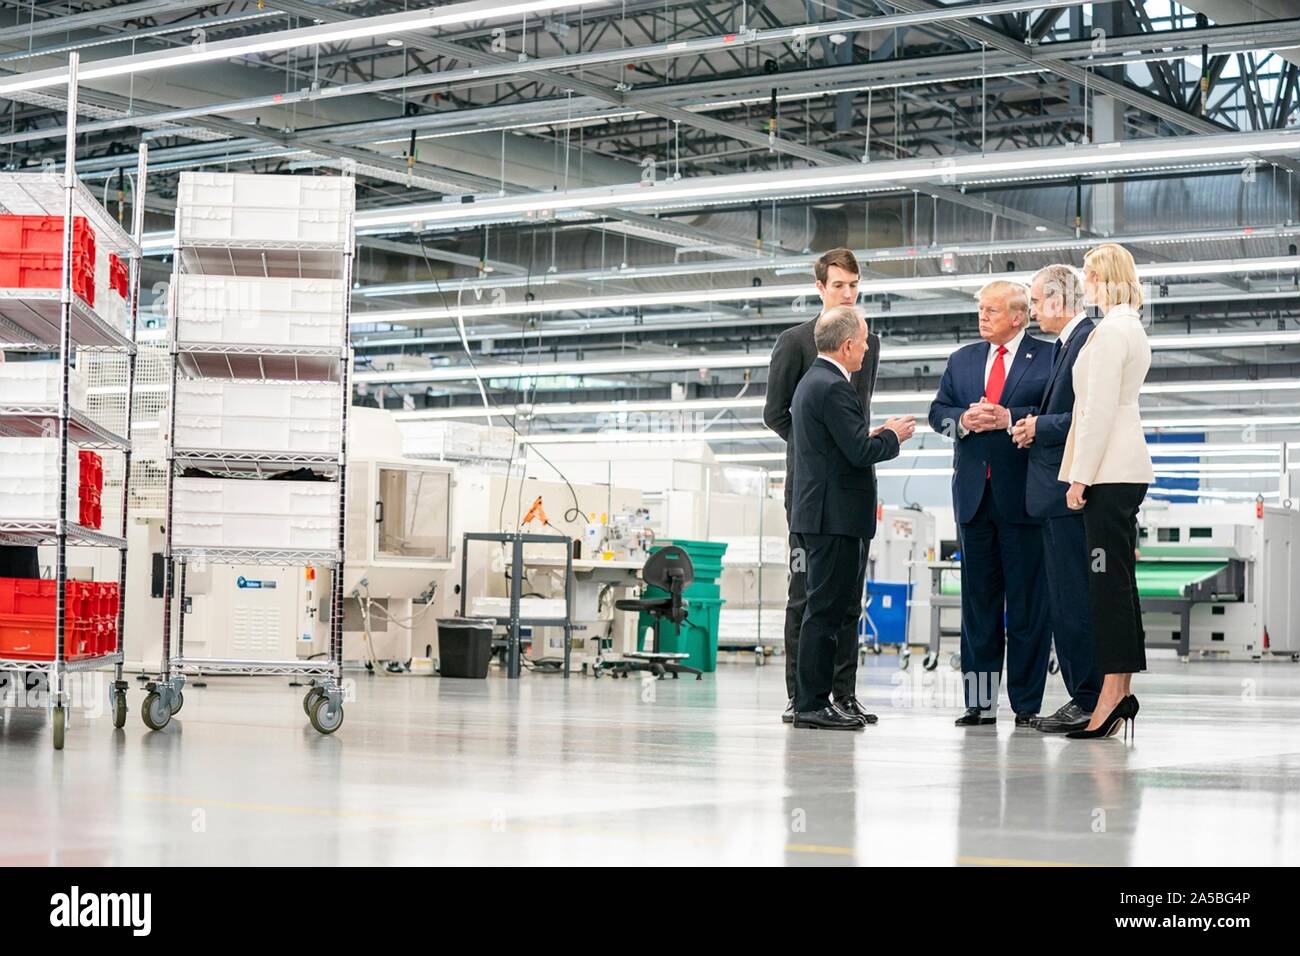 Trump, Bernard Arnault to Open Louis Vuitton Texas Bag Factory - Bloomberg